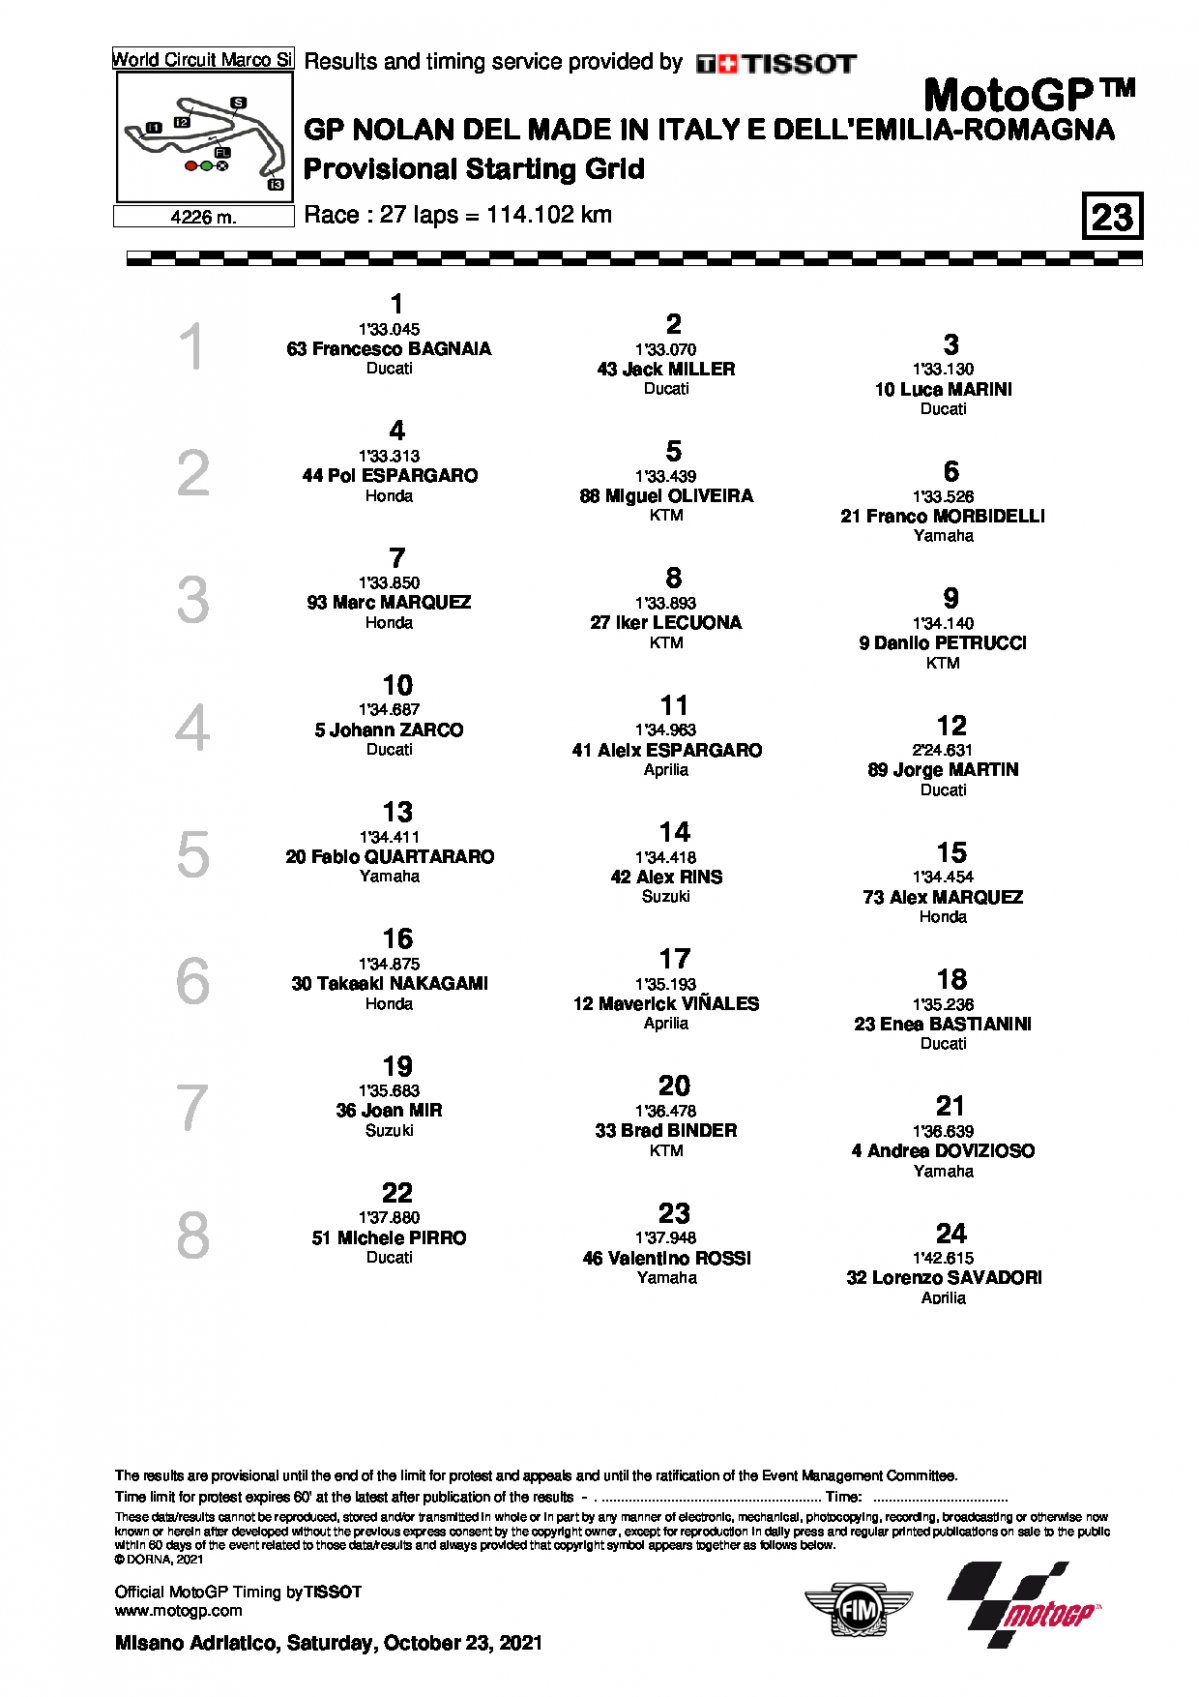 Стартовая решетка Гран-При Эмильи-Романьи, MotoGP, 24/10/2021